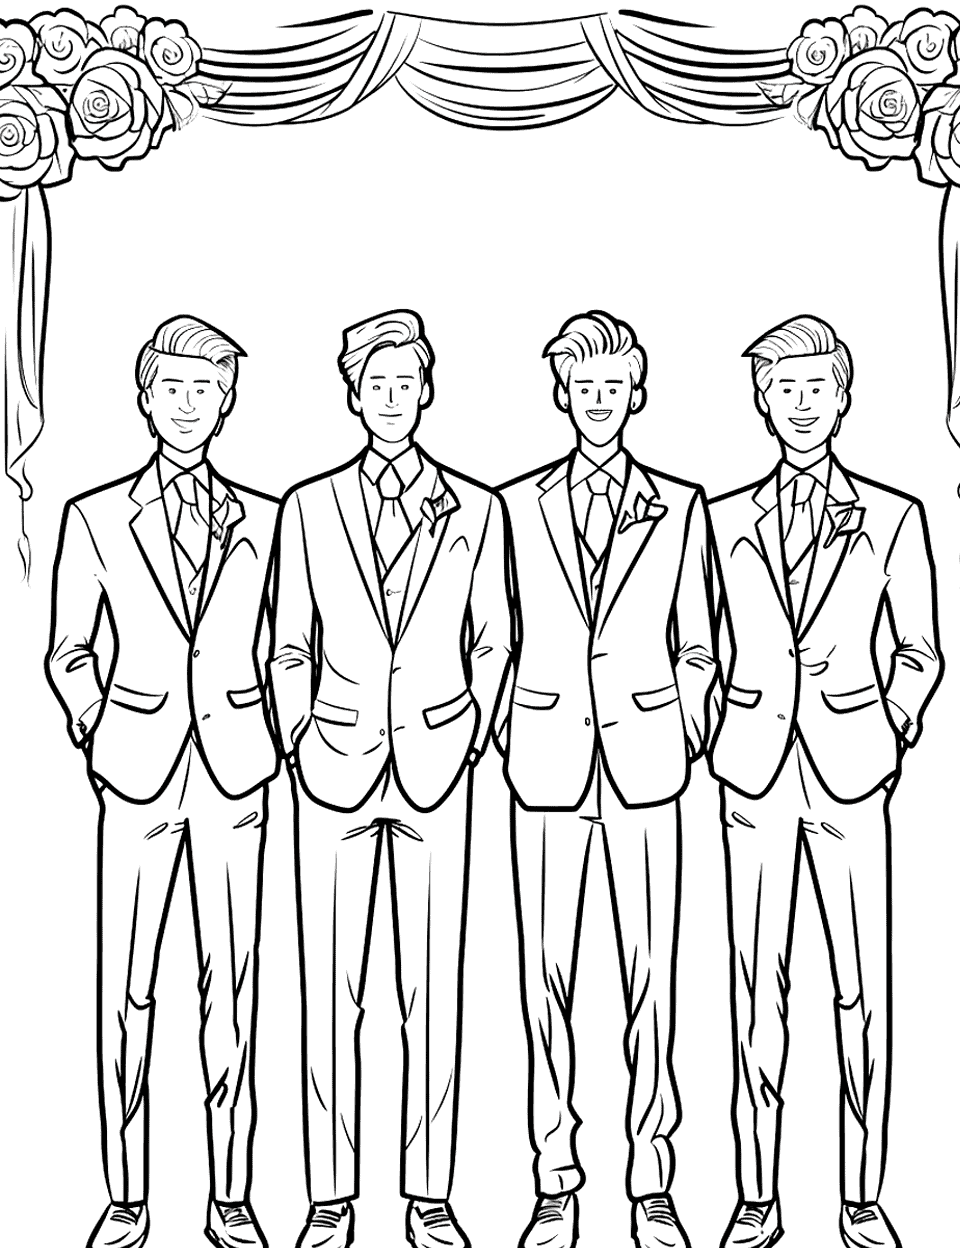 Groomsmen Shenanigans Wedding Coloring Page - Groomsmen in matching suits, striking dashing poses.